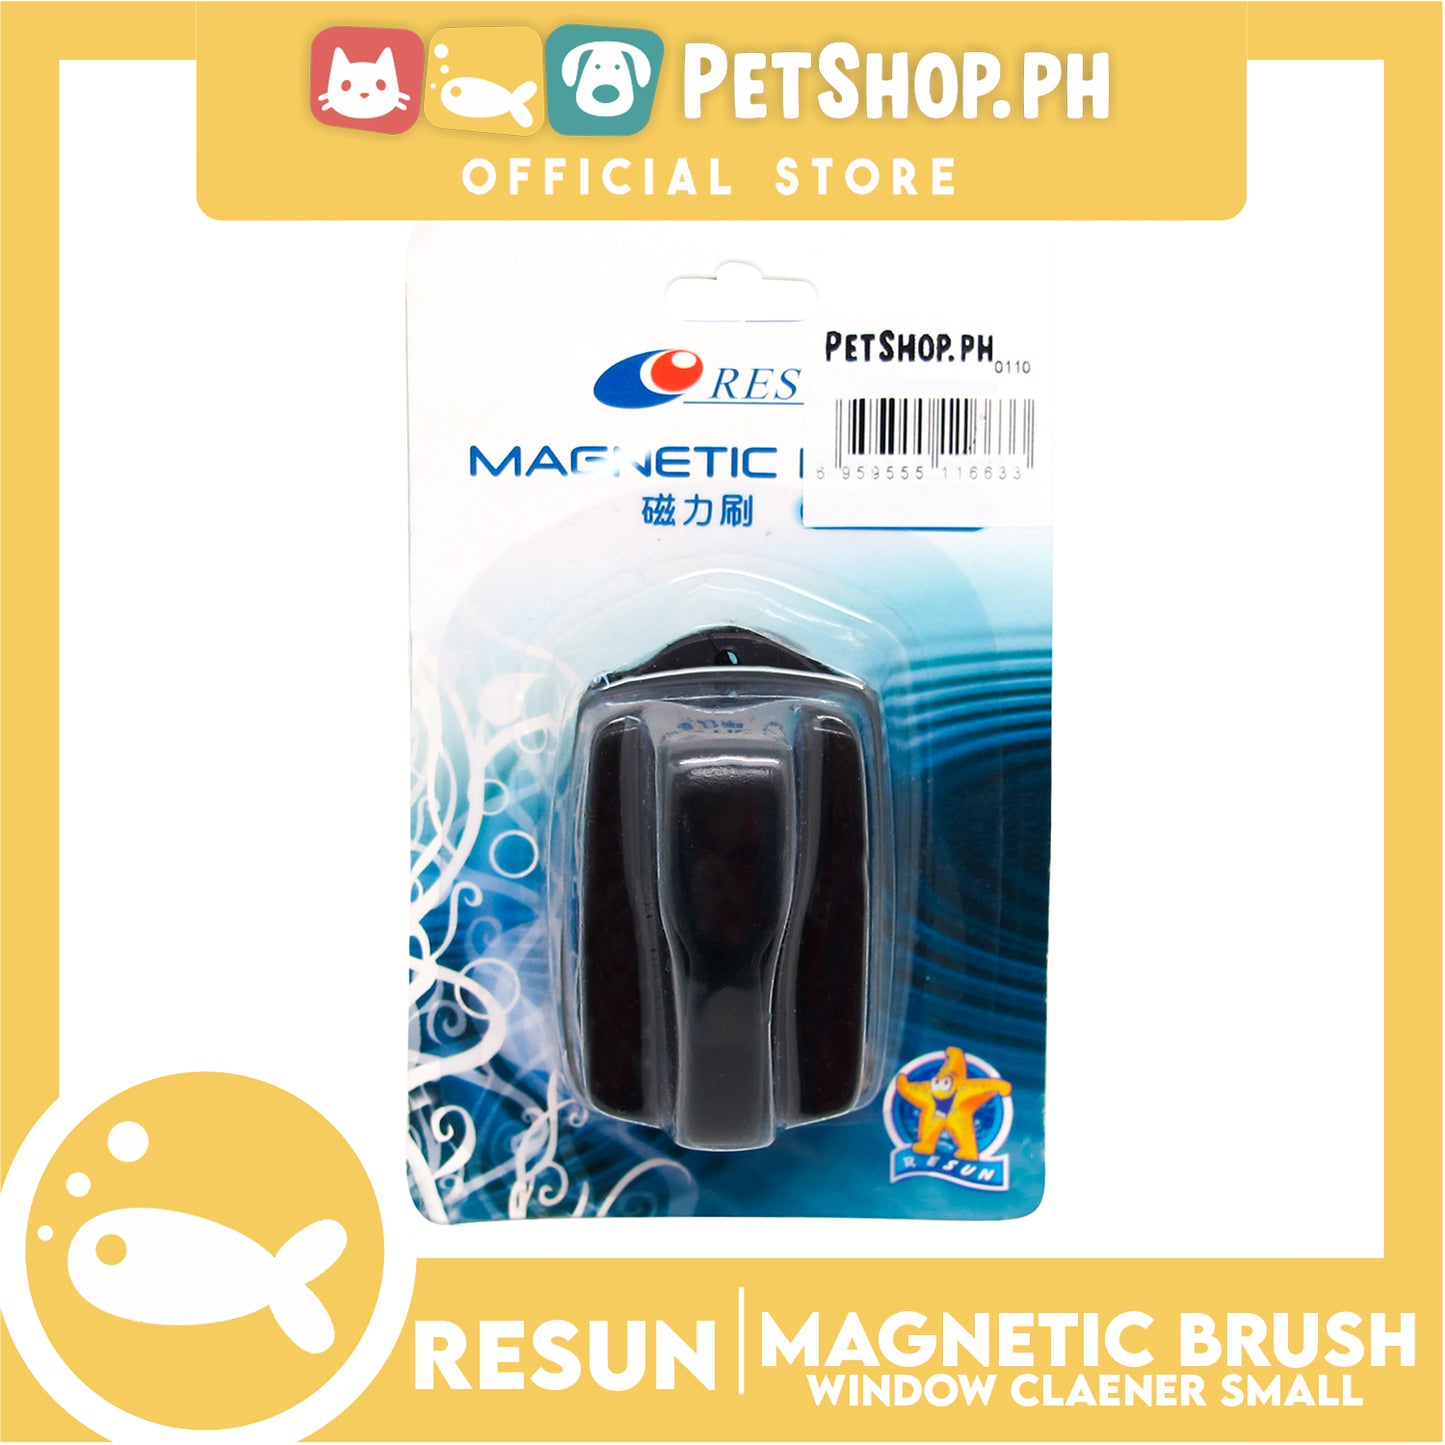 Resun Magnetic Brush Small